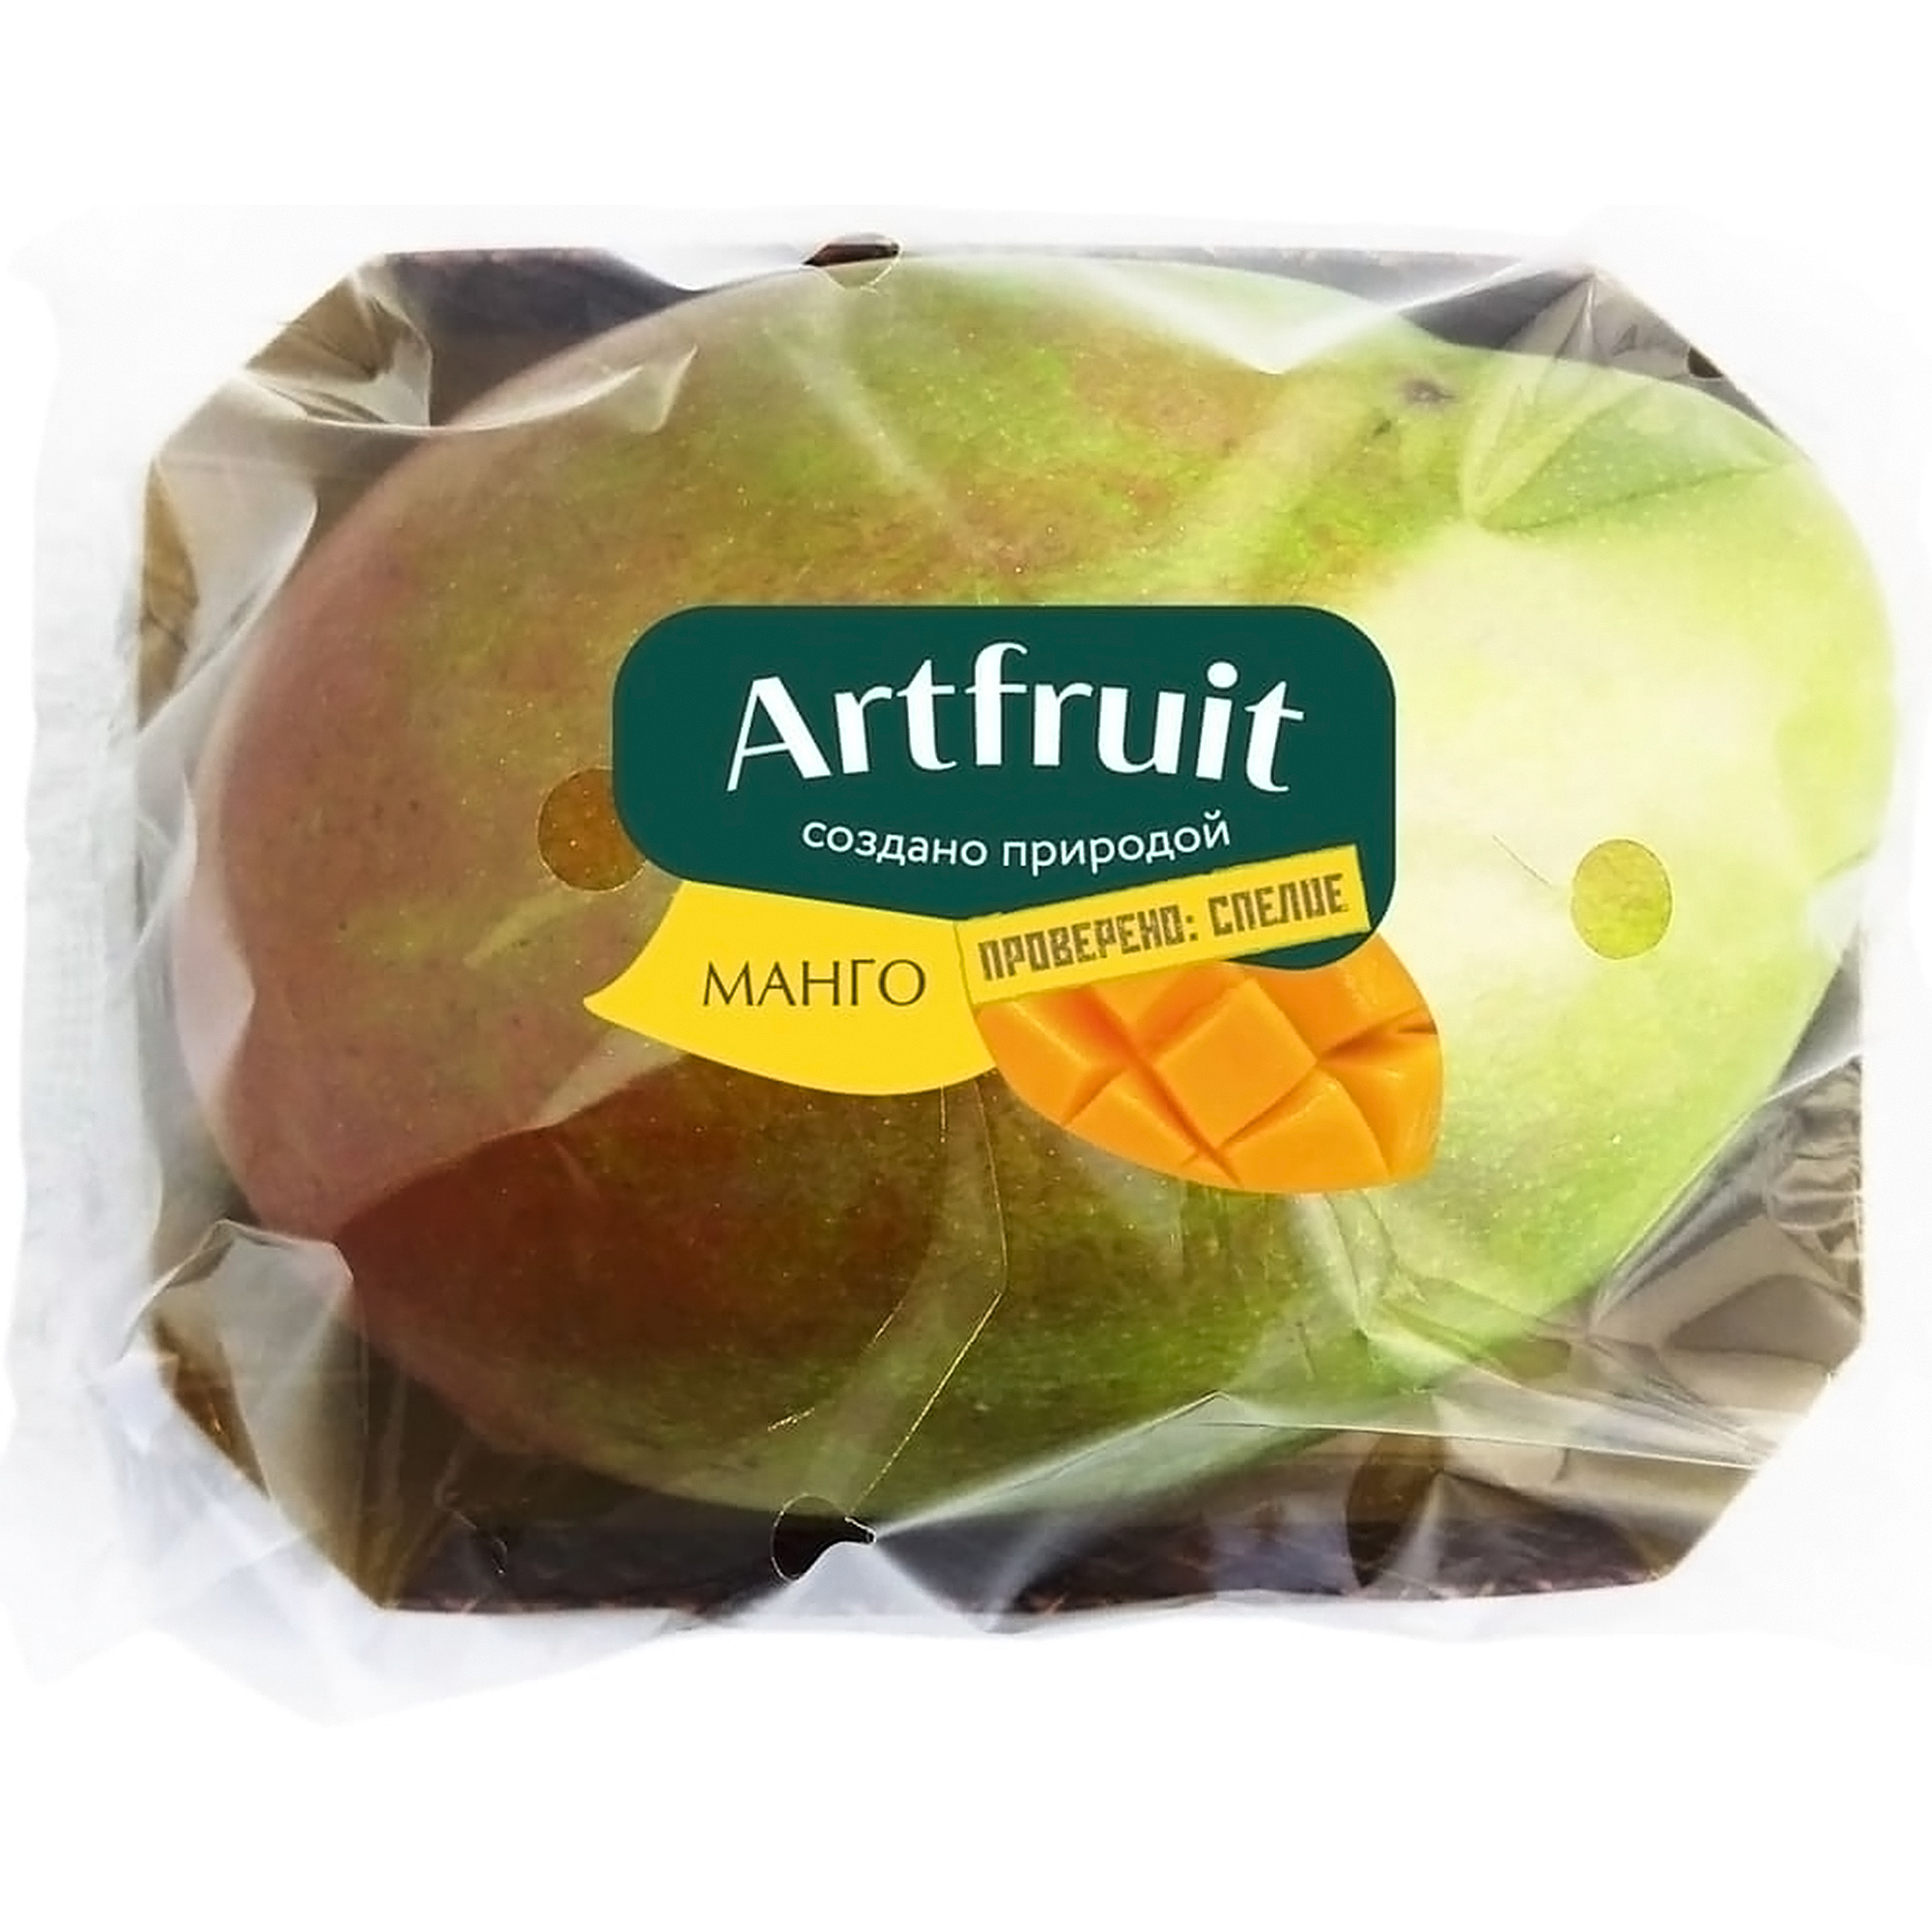 Спелый плод манго artfruit 1шт